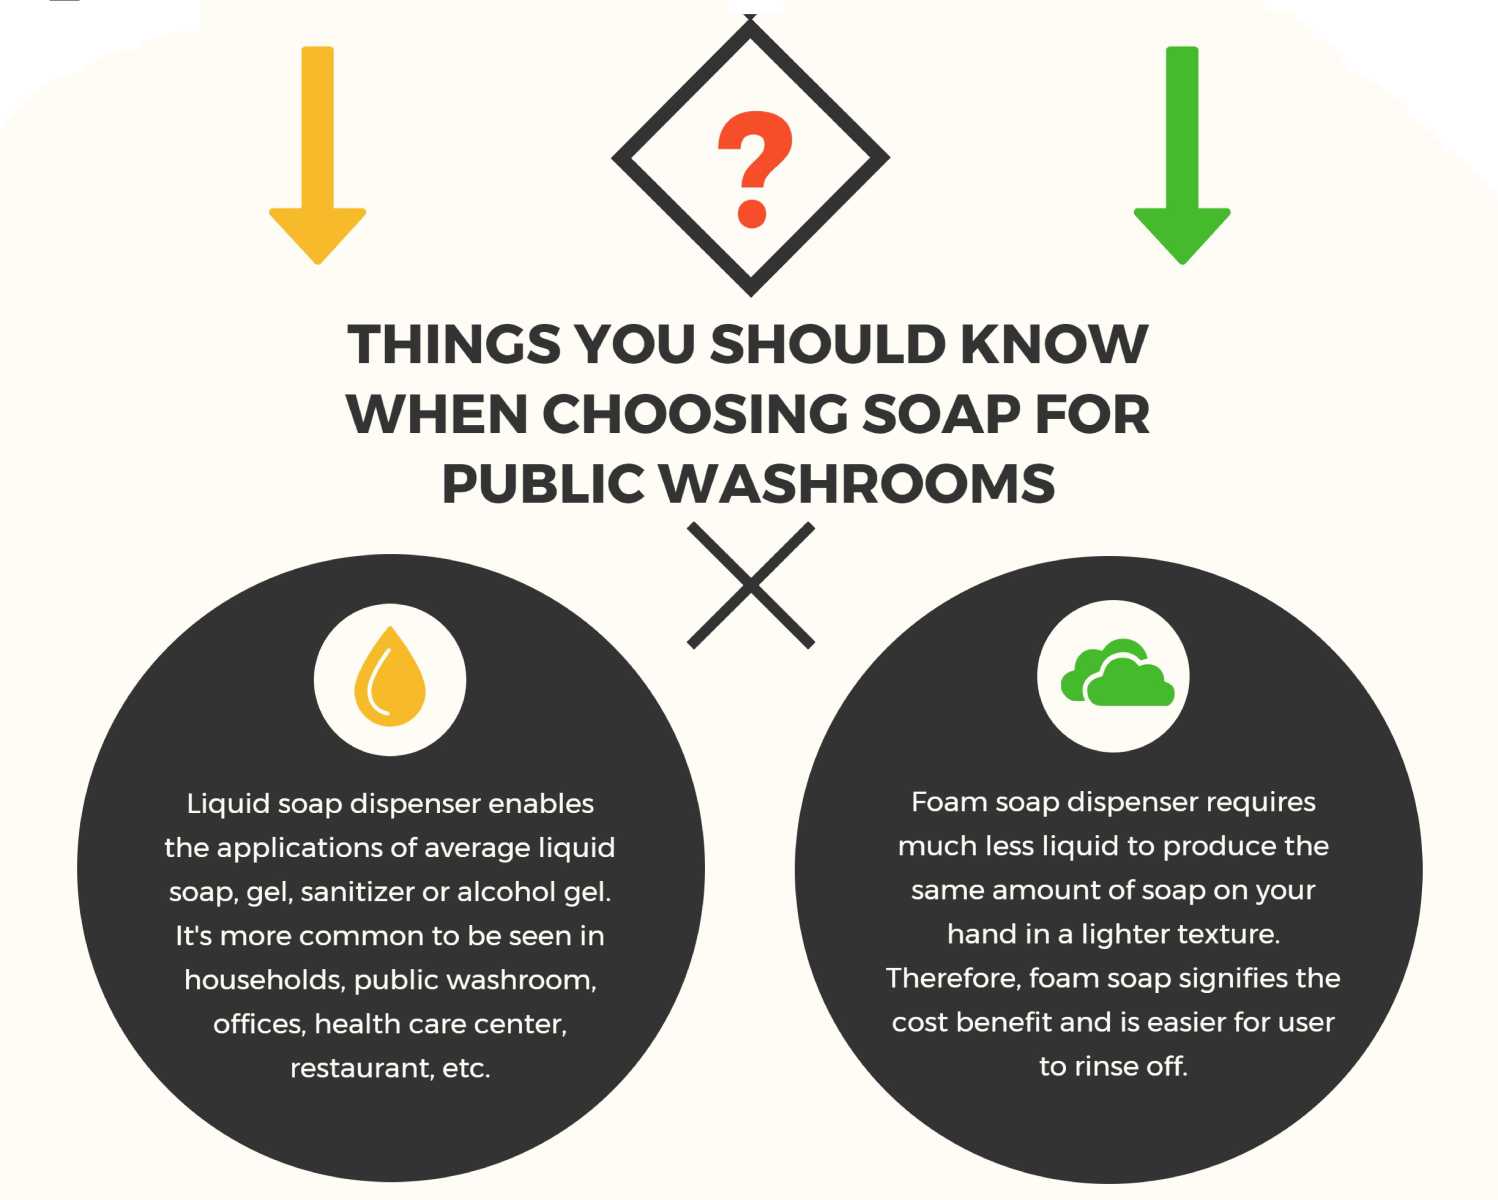 Veamos algunas ventajas y desventajas del jabón líquido y el jabón en espuma.